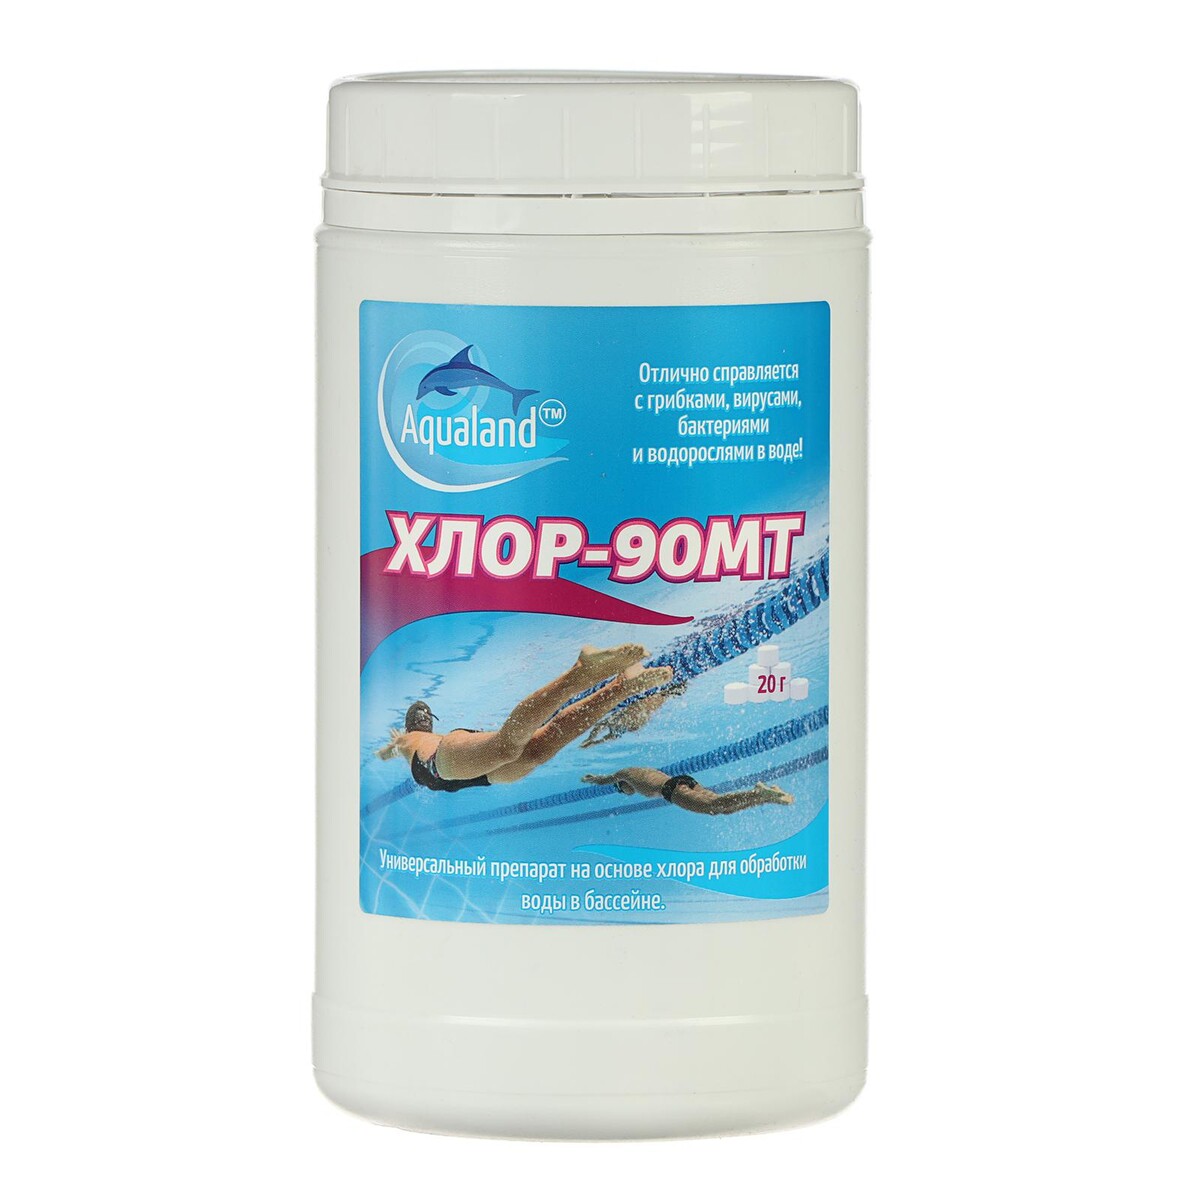 Дезинфицирующие средство aqualand хлор-90мт, таблетки 20 г, 1 кг средство против водорослей aqualand альгицид 5 л